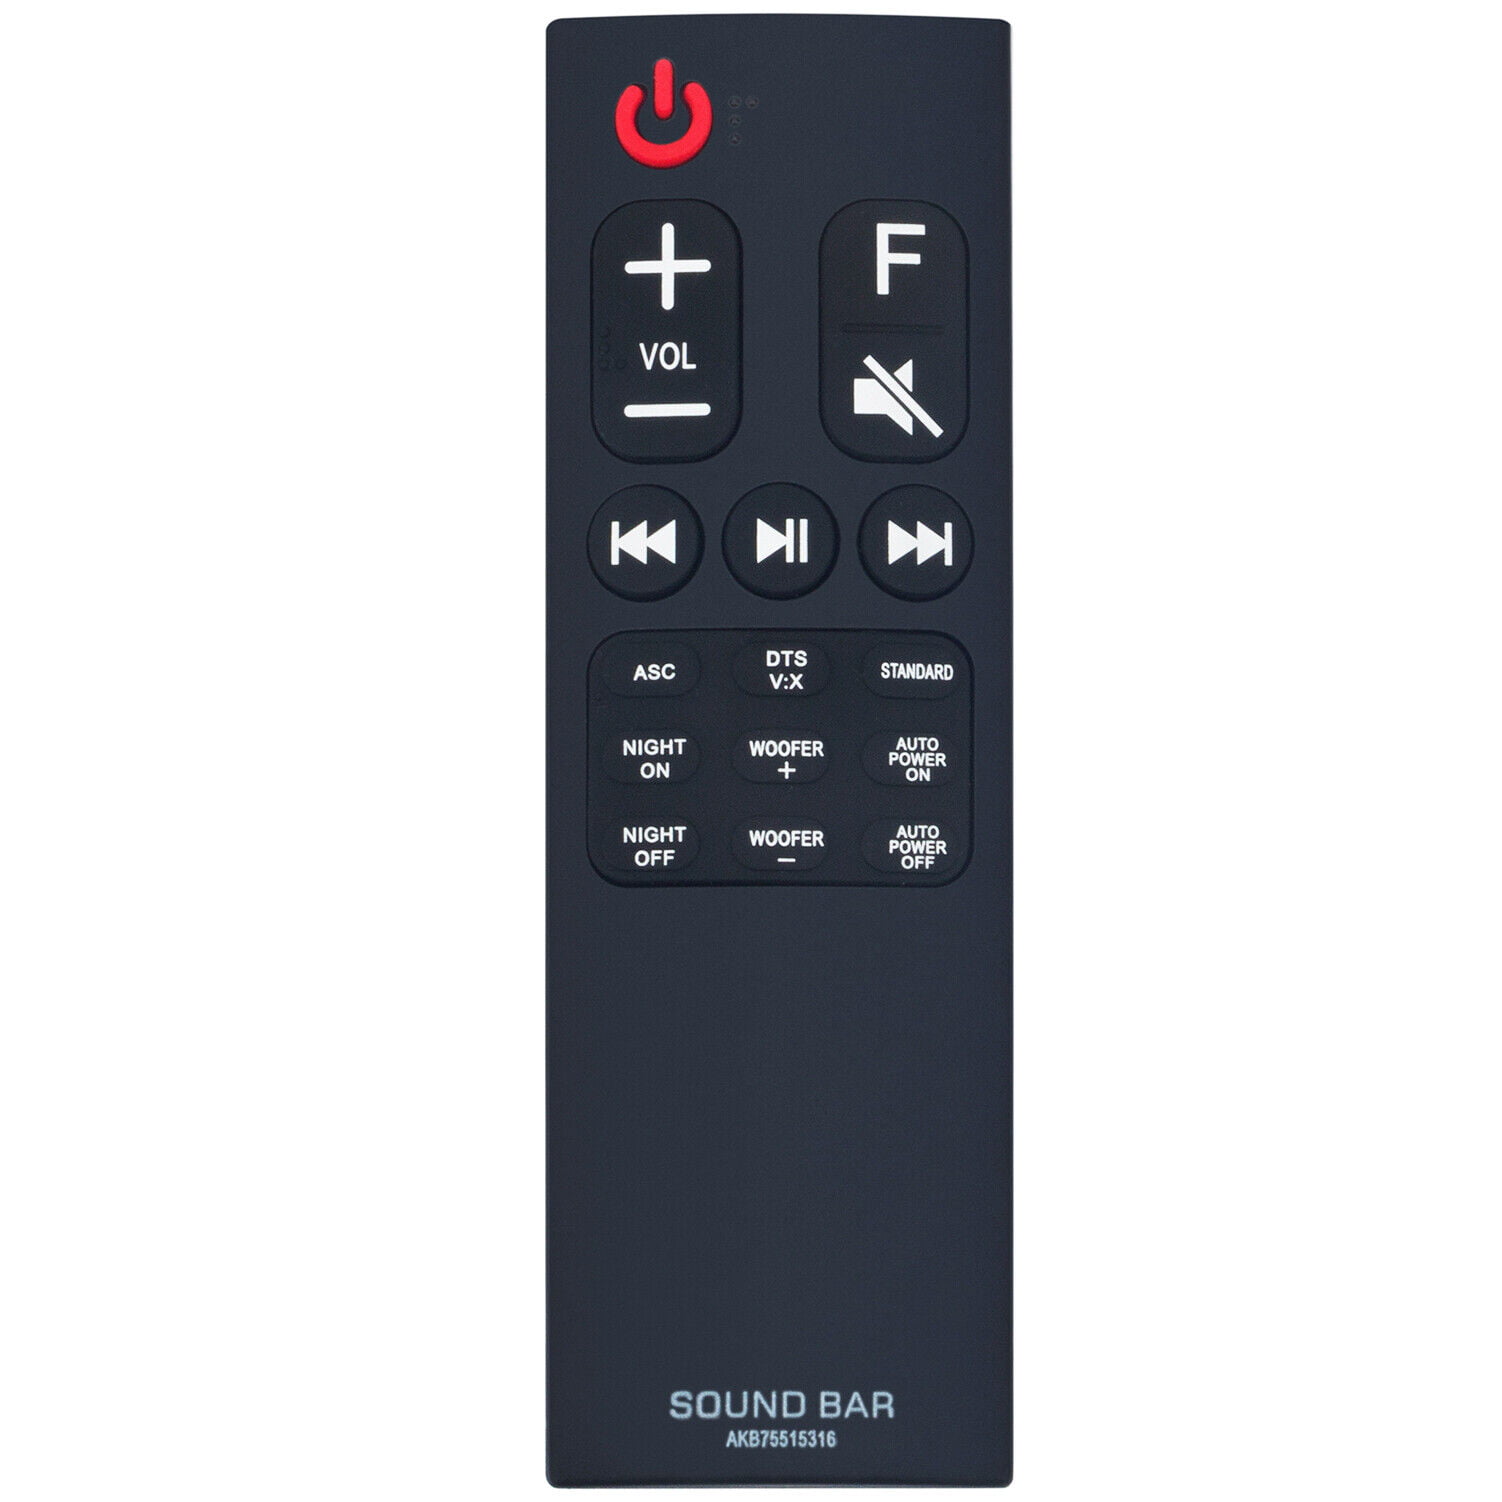 jeg er enig Wrap Opmuntring AKB75515316 Replace Remote Control for LG Sound Bar System SK5 SK5Y Soundbar  - Walmart.com